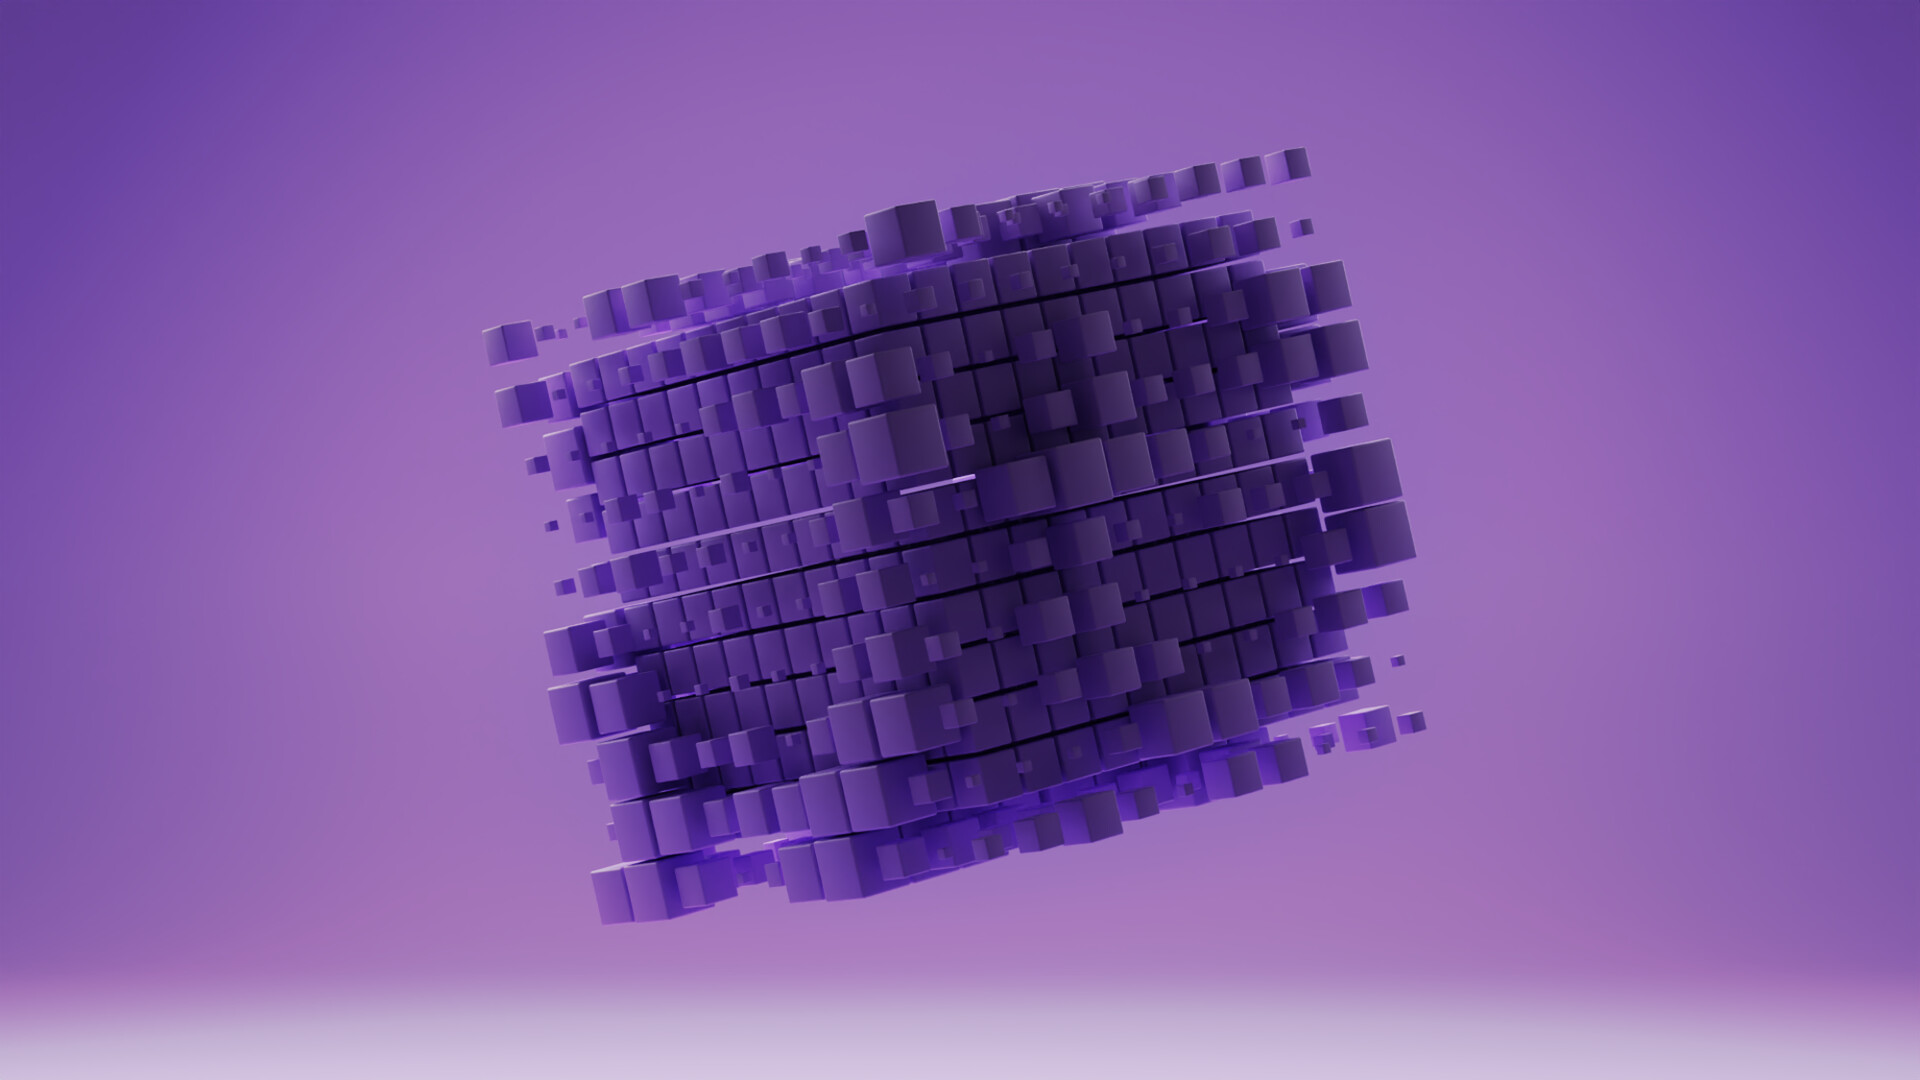 ArtStation - 3D Cube